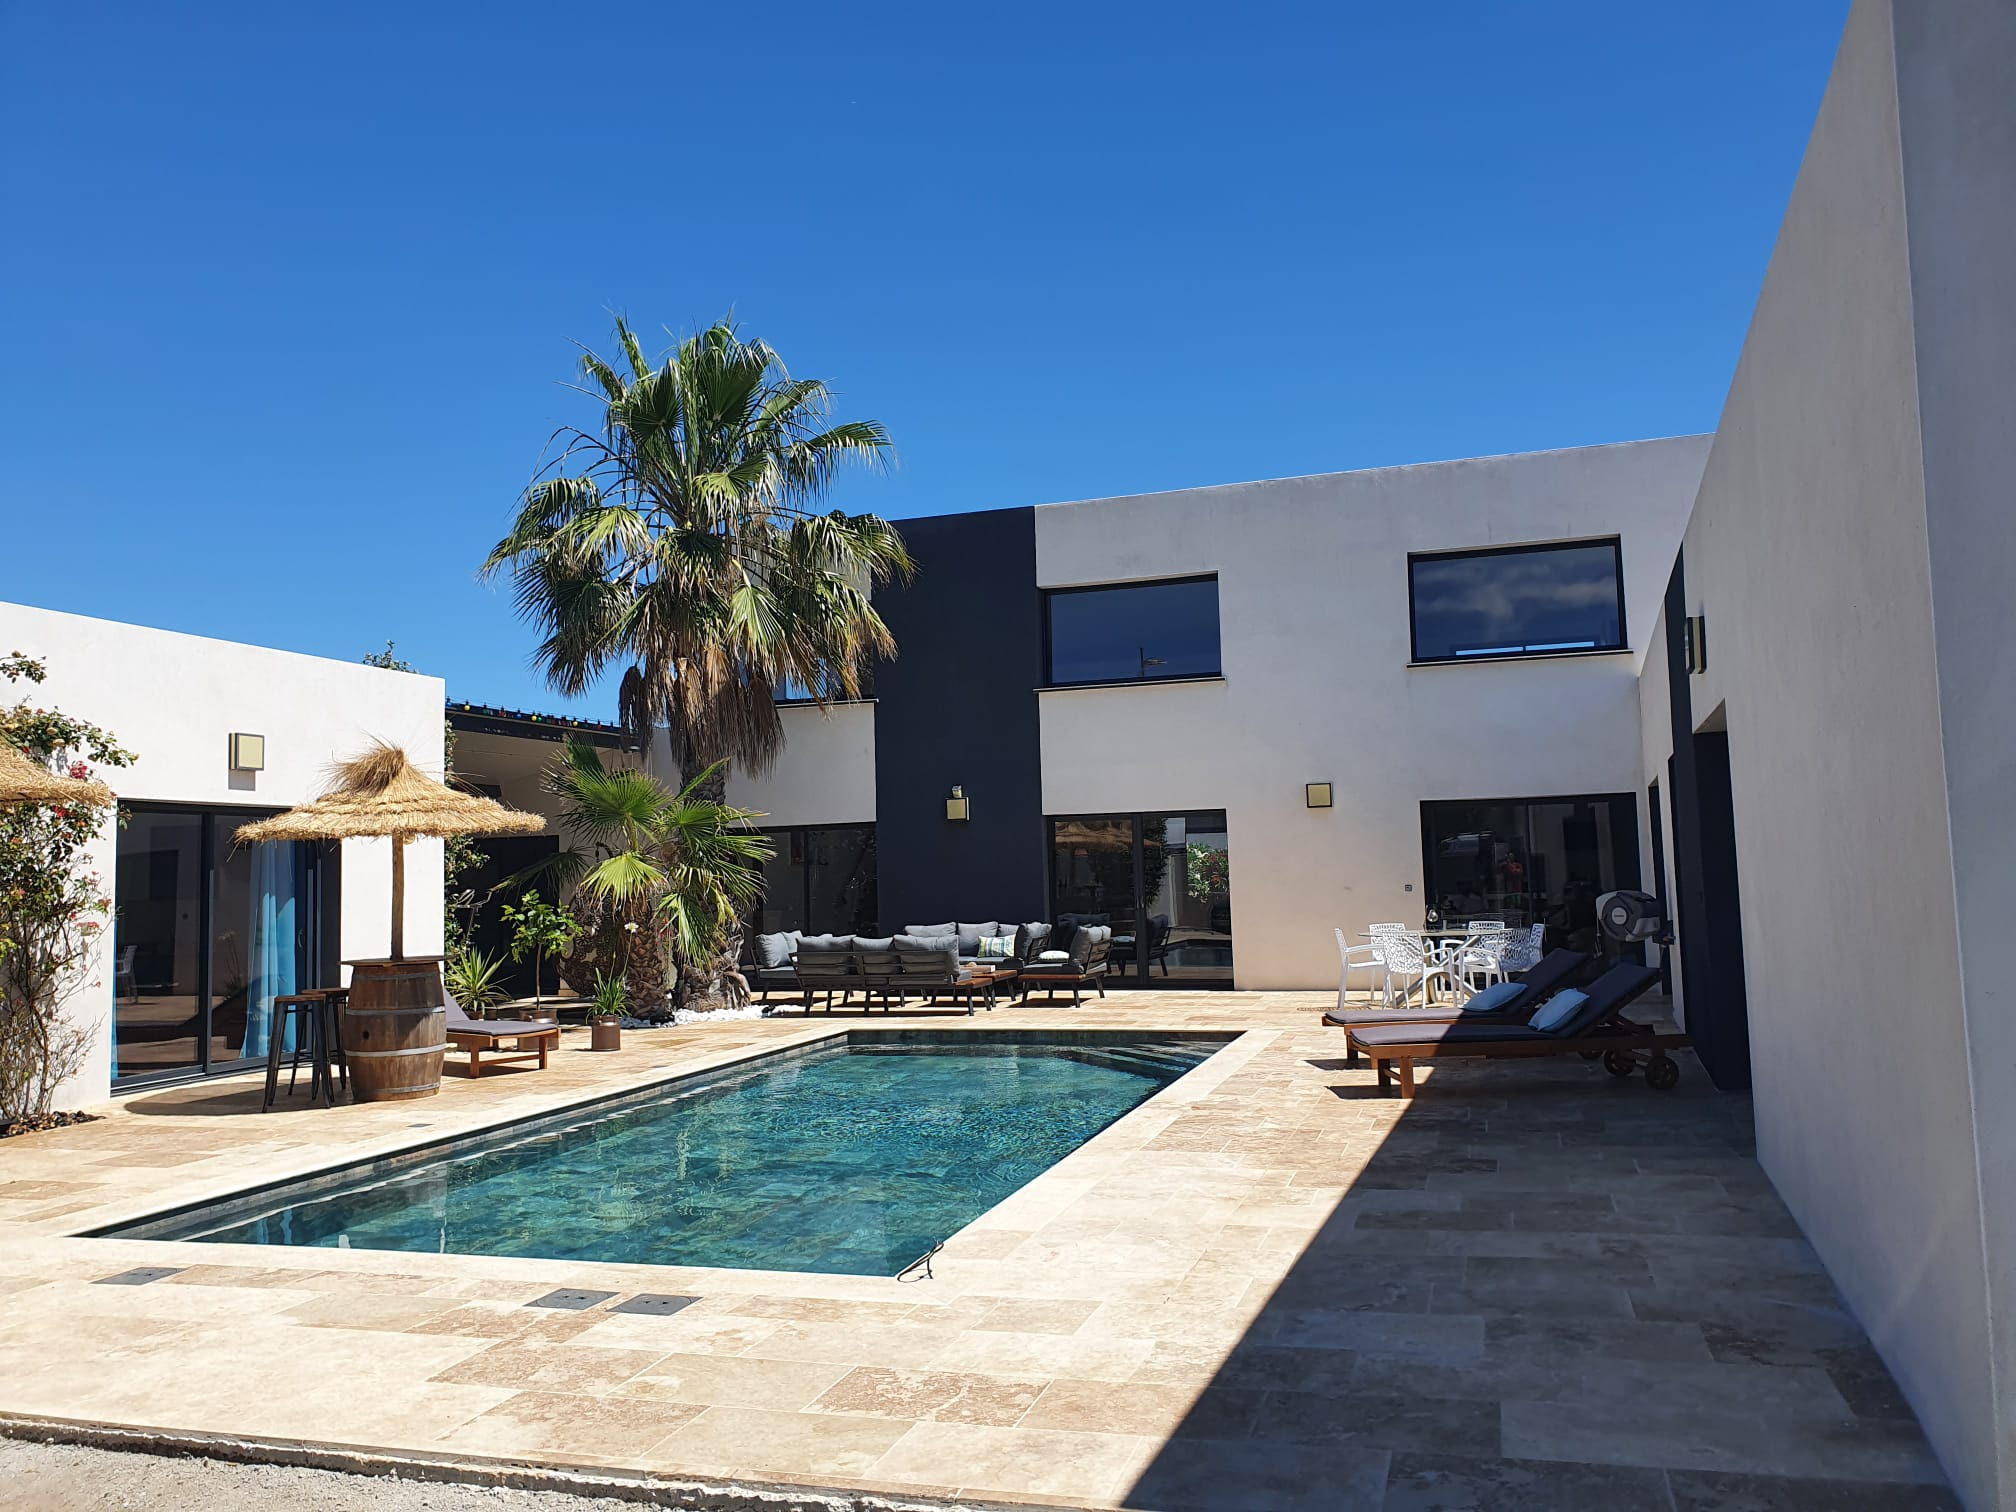 Carrelage aspect pierre couleur terracotta dans un espace extérieur combiné avec une piscine et mobilier de jardin contre une maison moderne